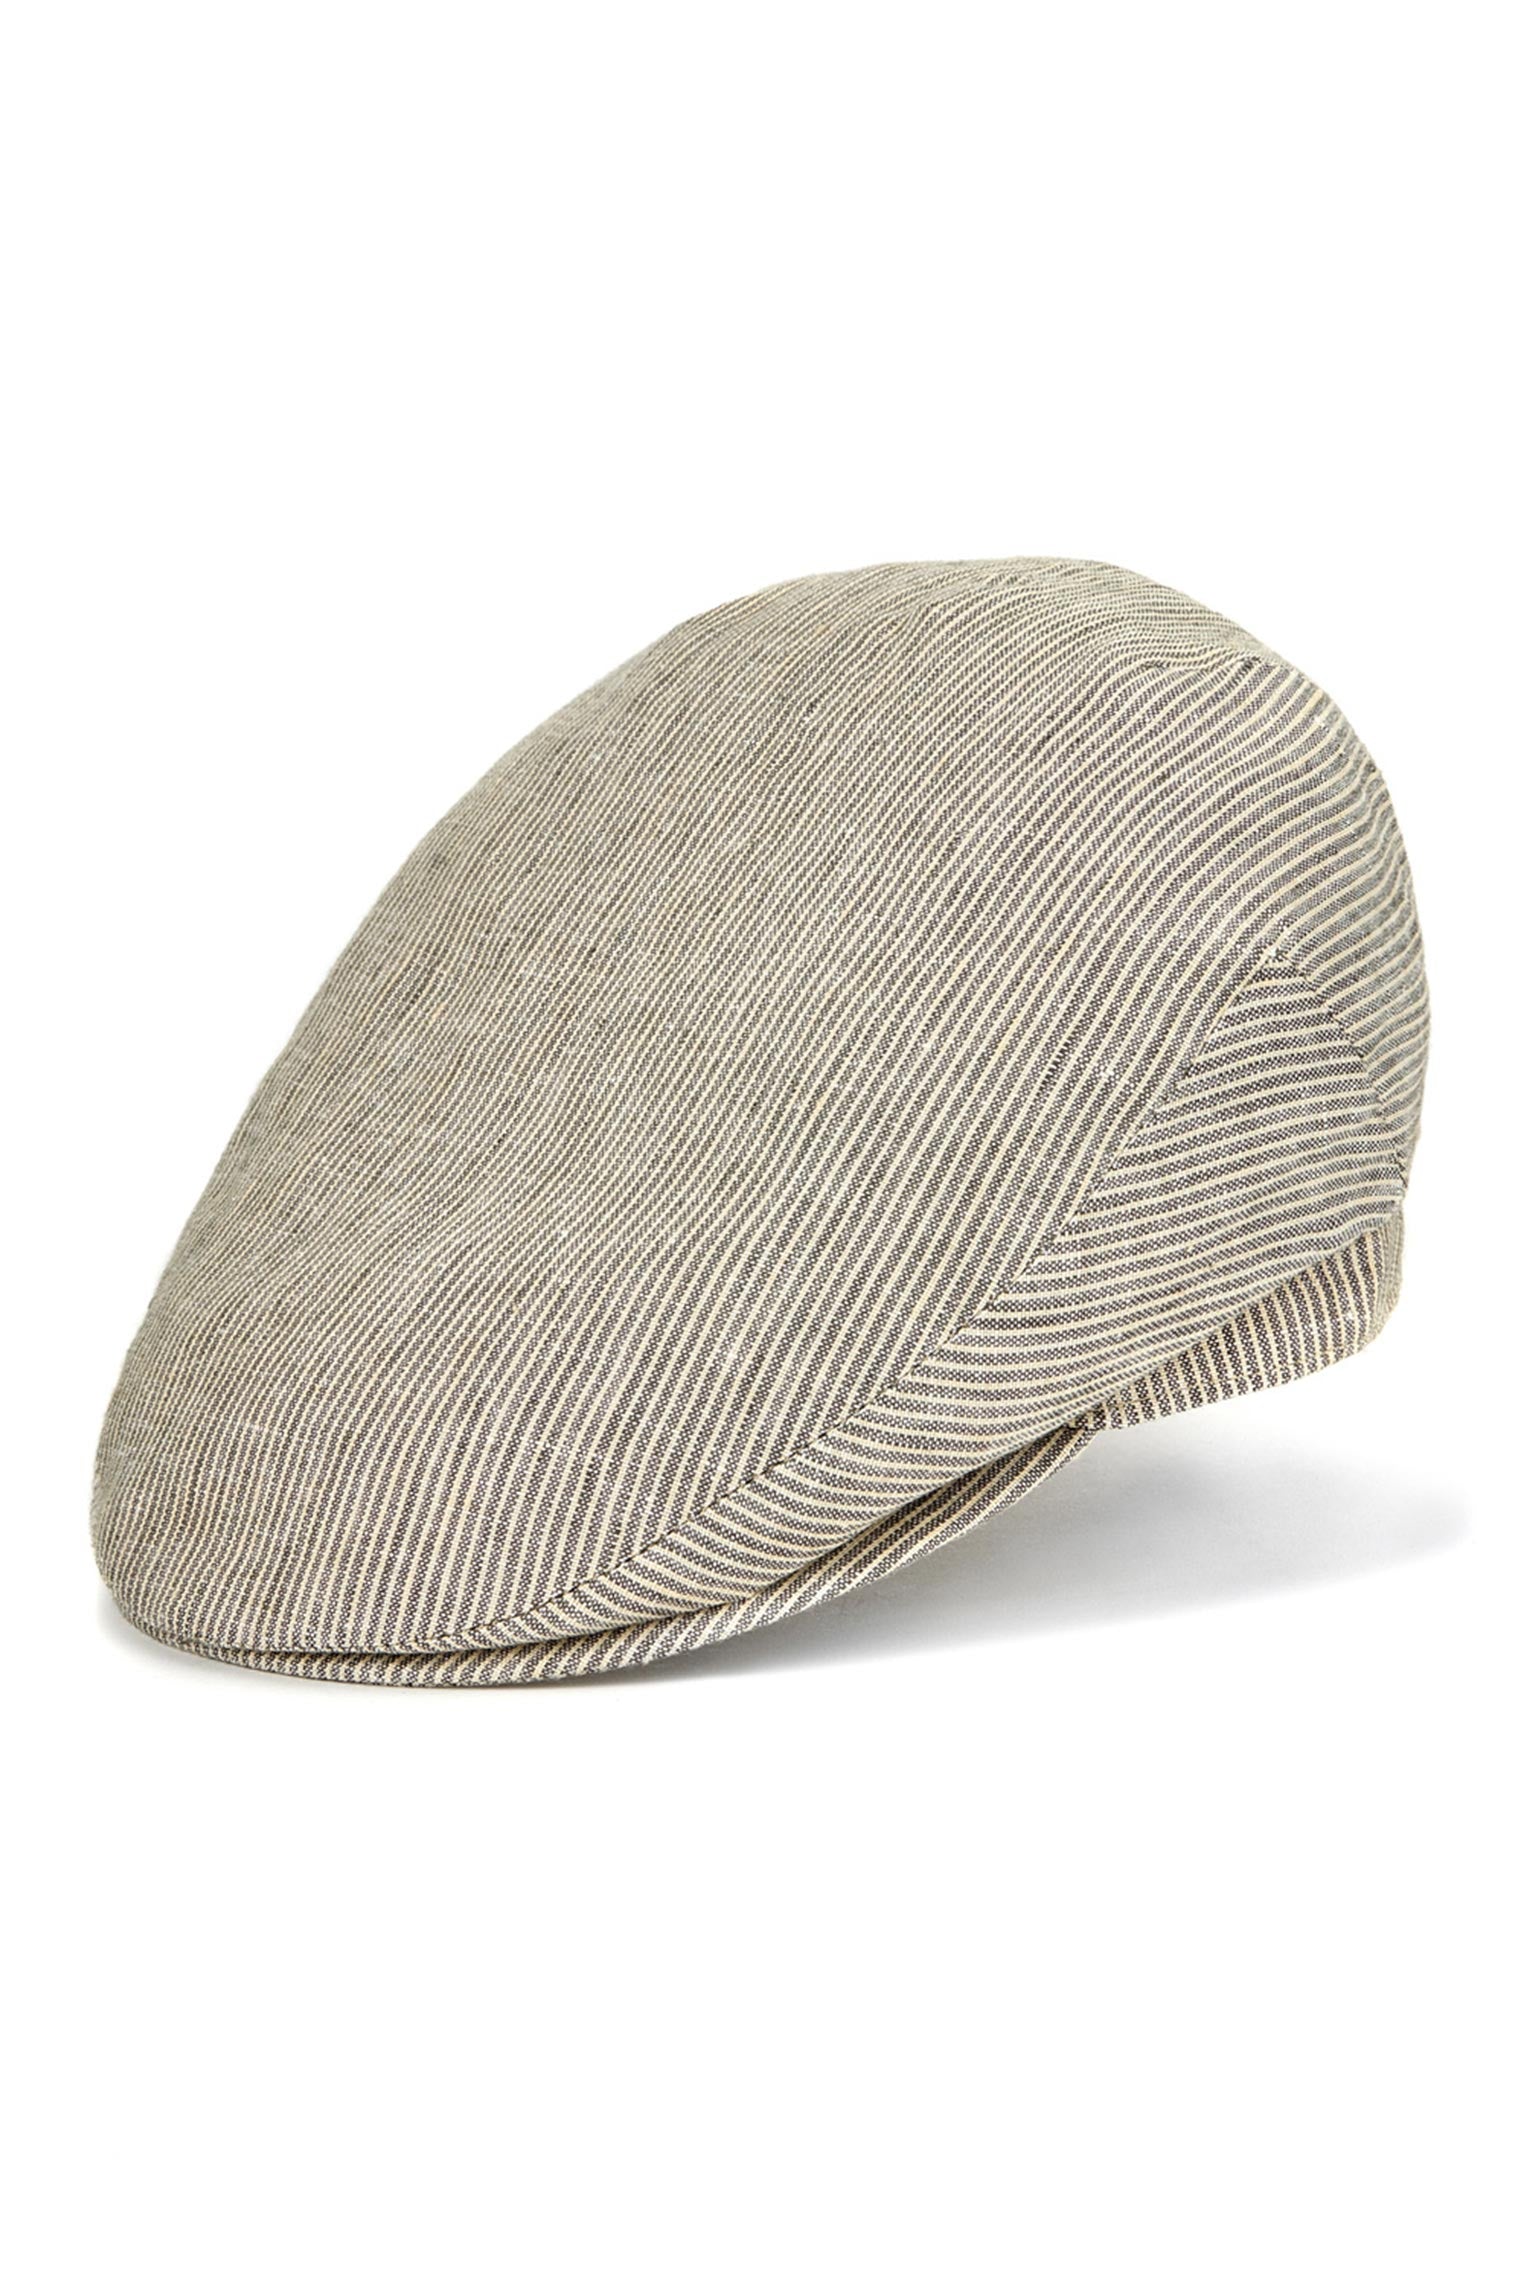 Cannes Linen Flat Cap - All Ready to Wear - Lock & Co. Hatters London UK